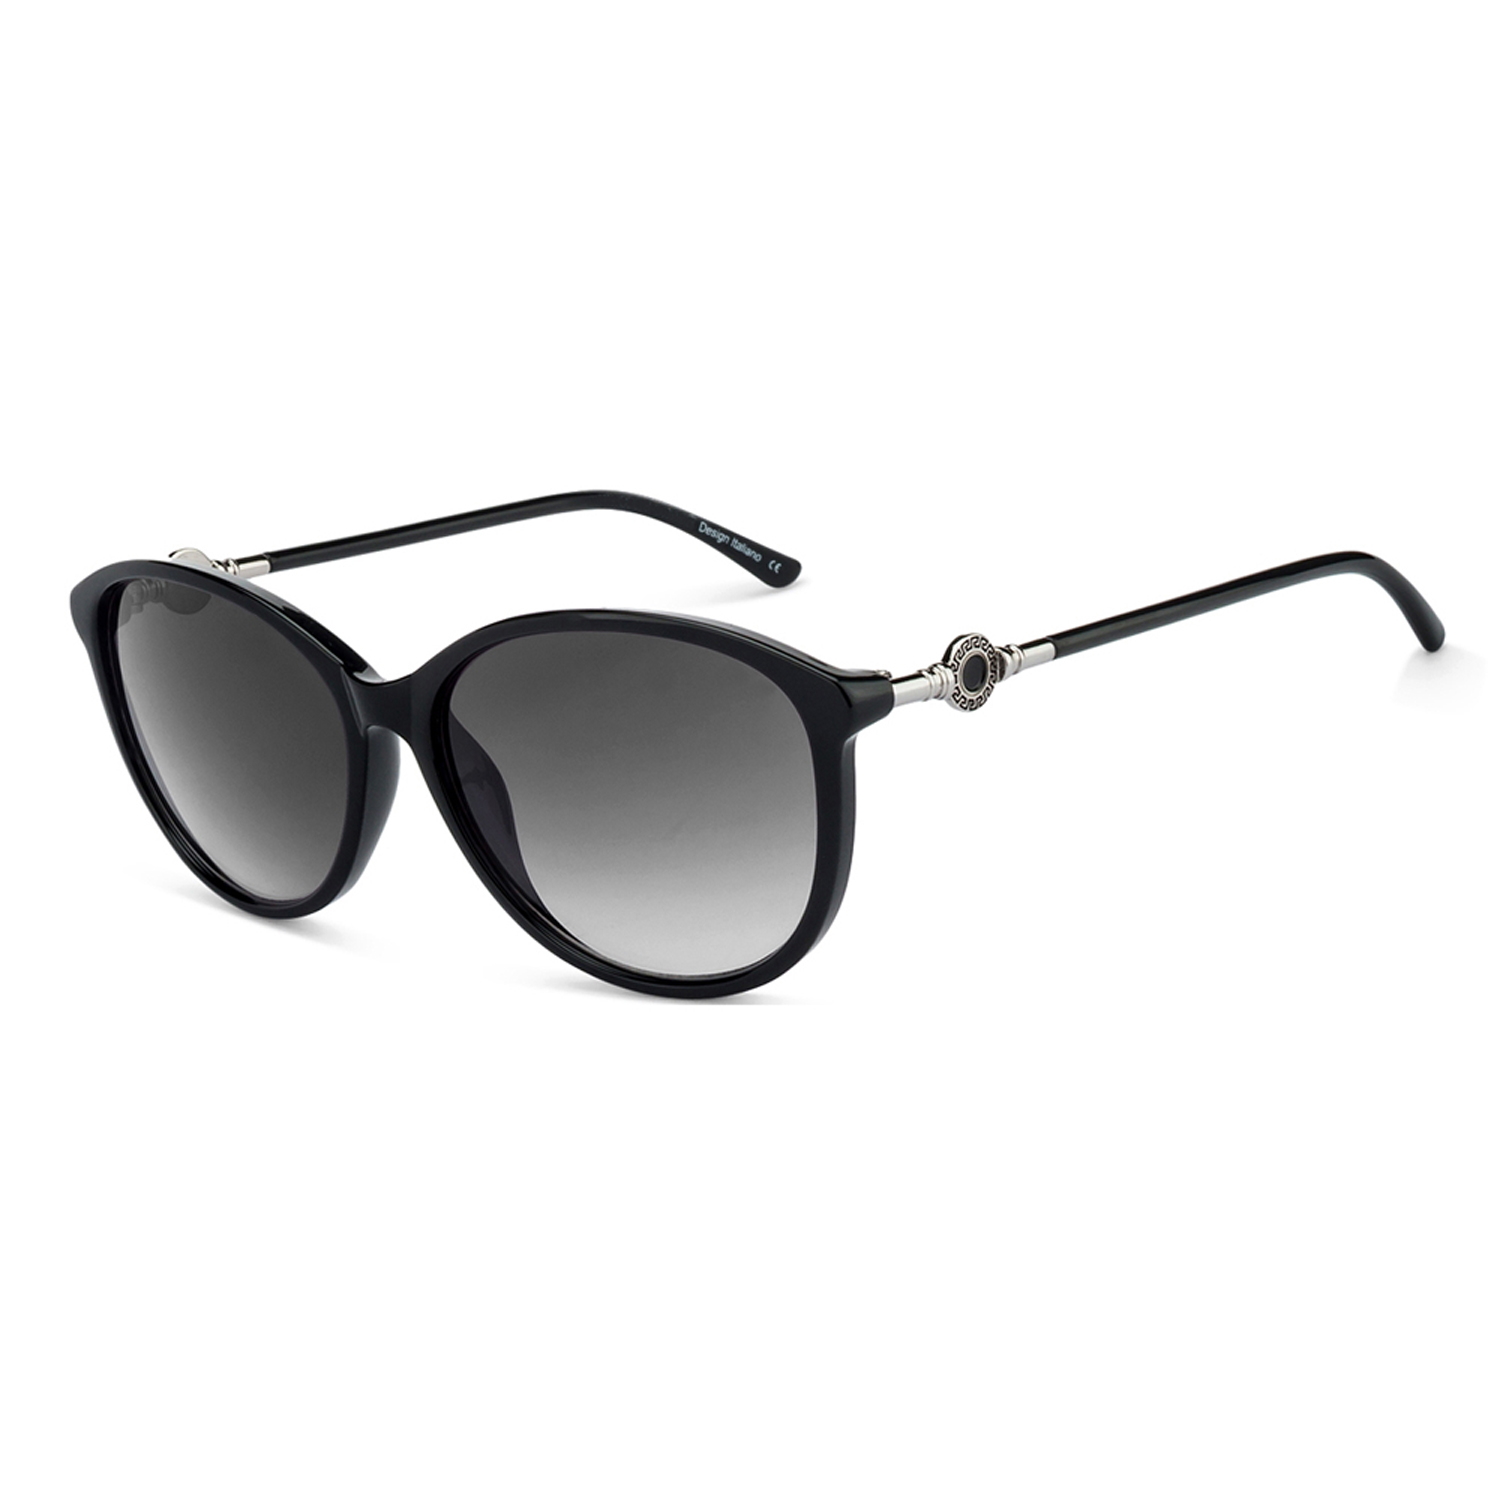 Schwarze klassische runde Damensonnenbrille 5910